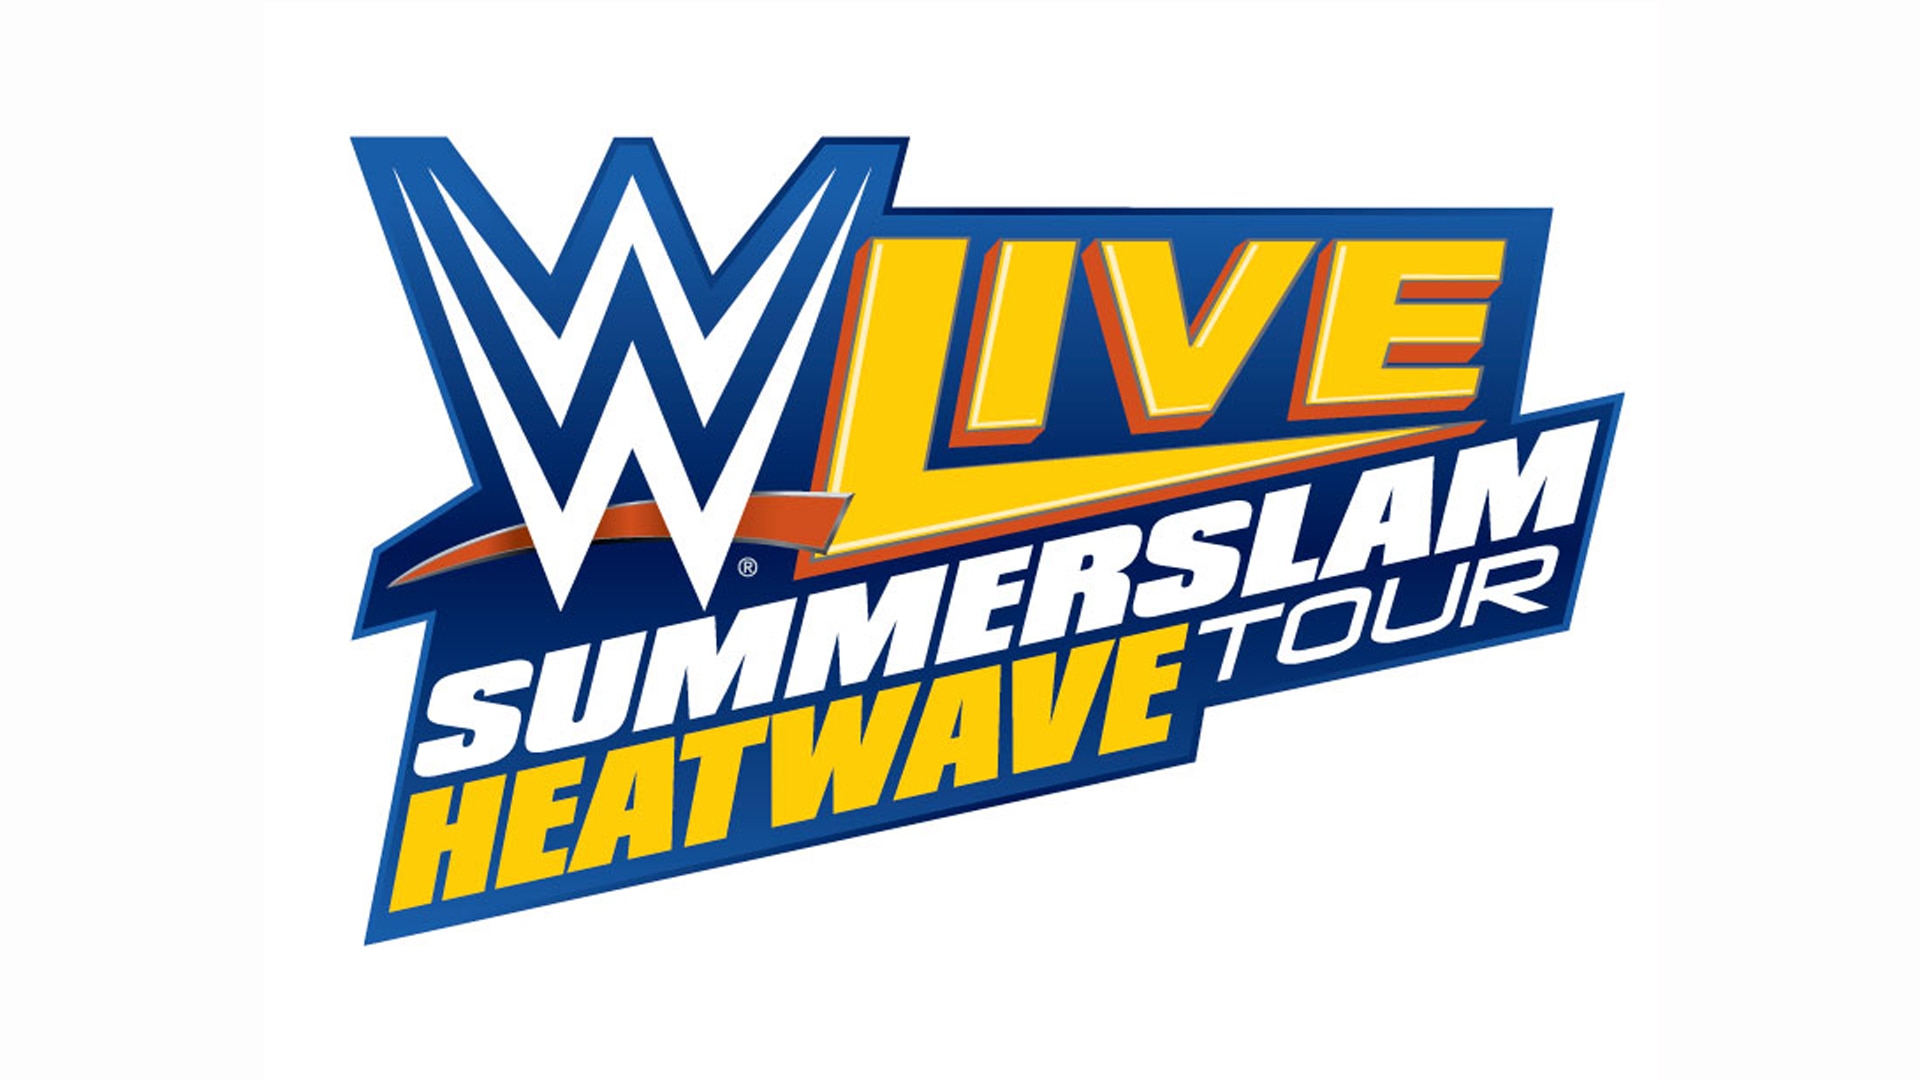 Wwe Live Summerslam Heatwave Tour 2019 - HD Wallpaper 